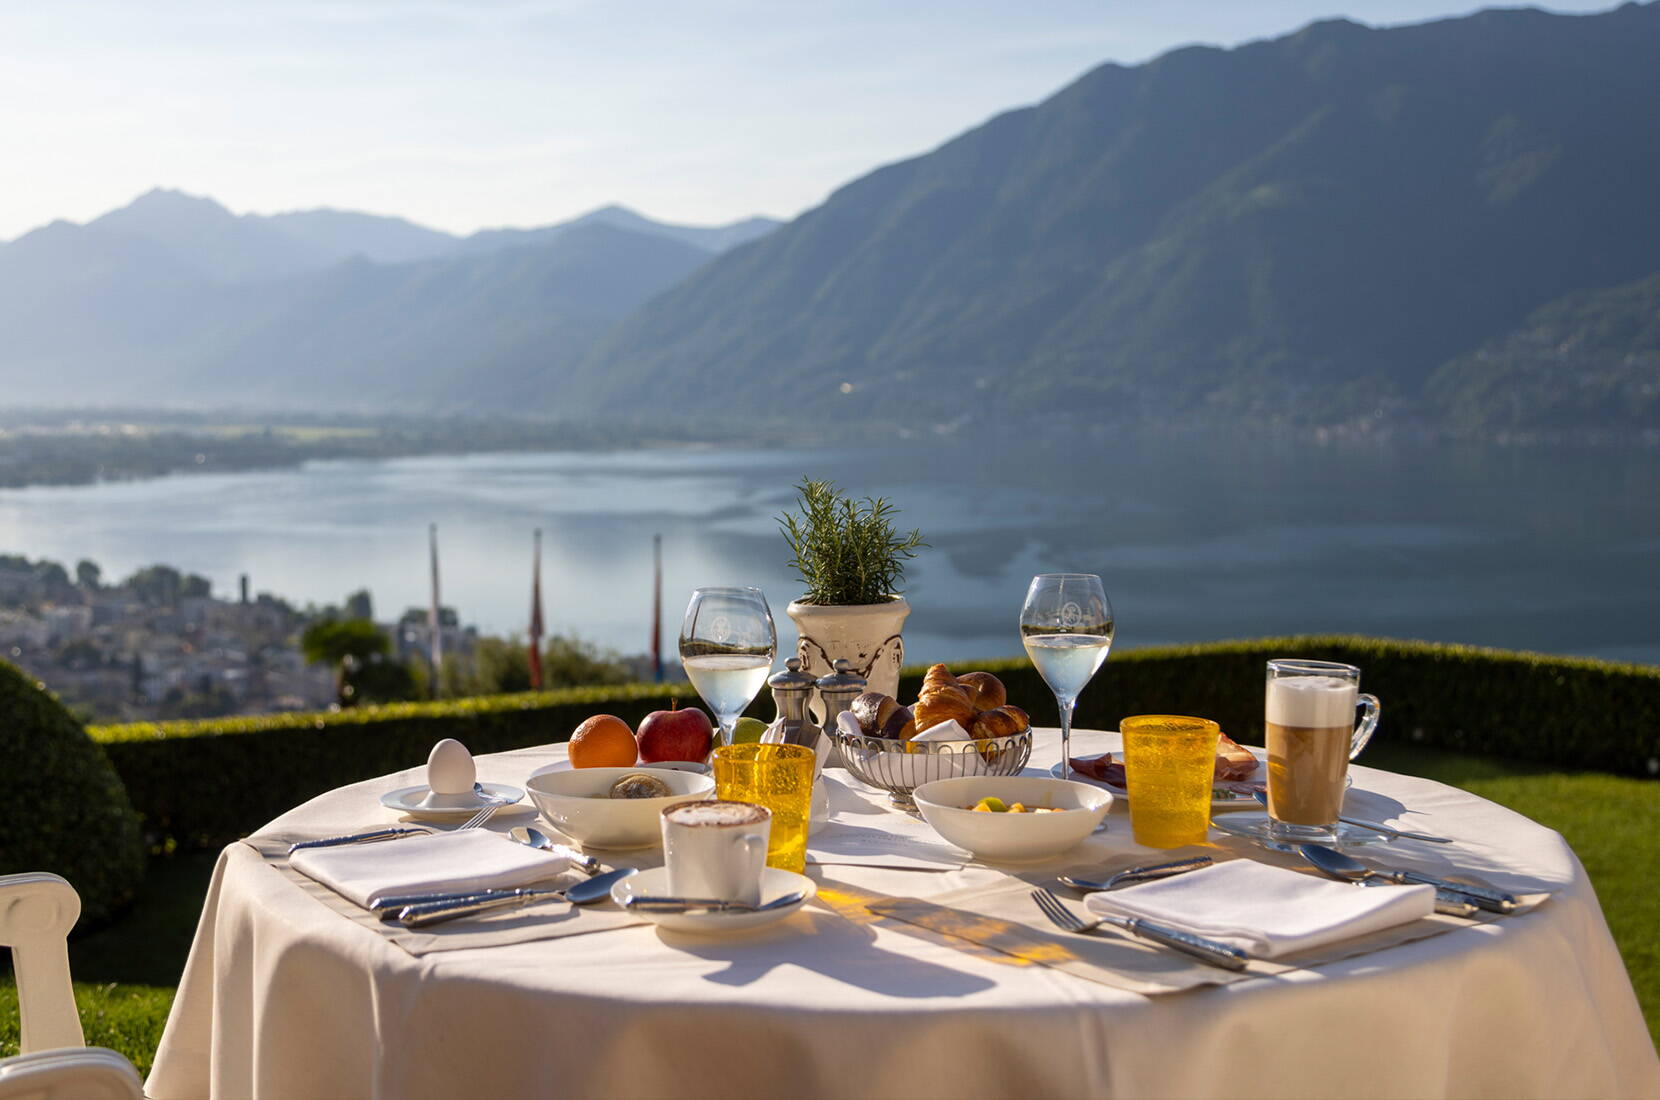 Come membro della HotelCard, potete soggiornare in oltre 500 hotel in Svizzera e nei paesi limitrofi con sconti fino al 50%. Da un accogliente chalet alpino nei Grigioni a un resort a 5 stelle sul Lago di Ginevra, troverete tutto ciò che il vostro cuore di viaggiatore desidera.